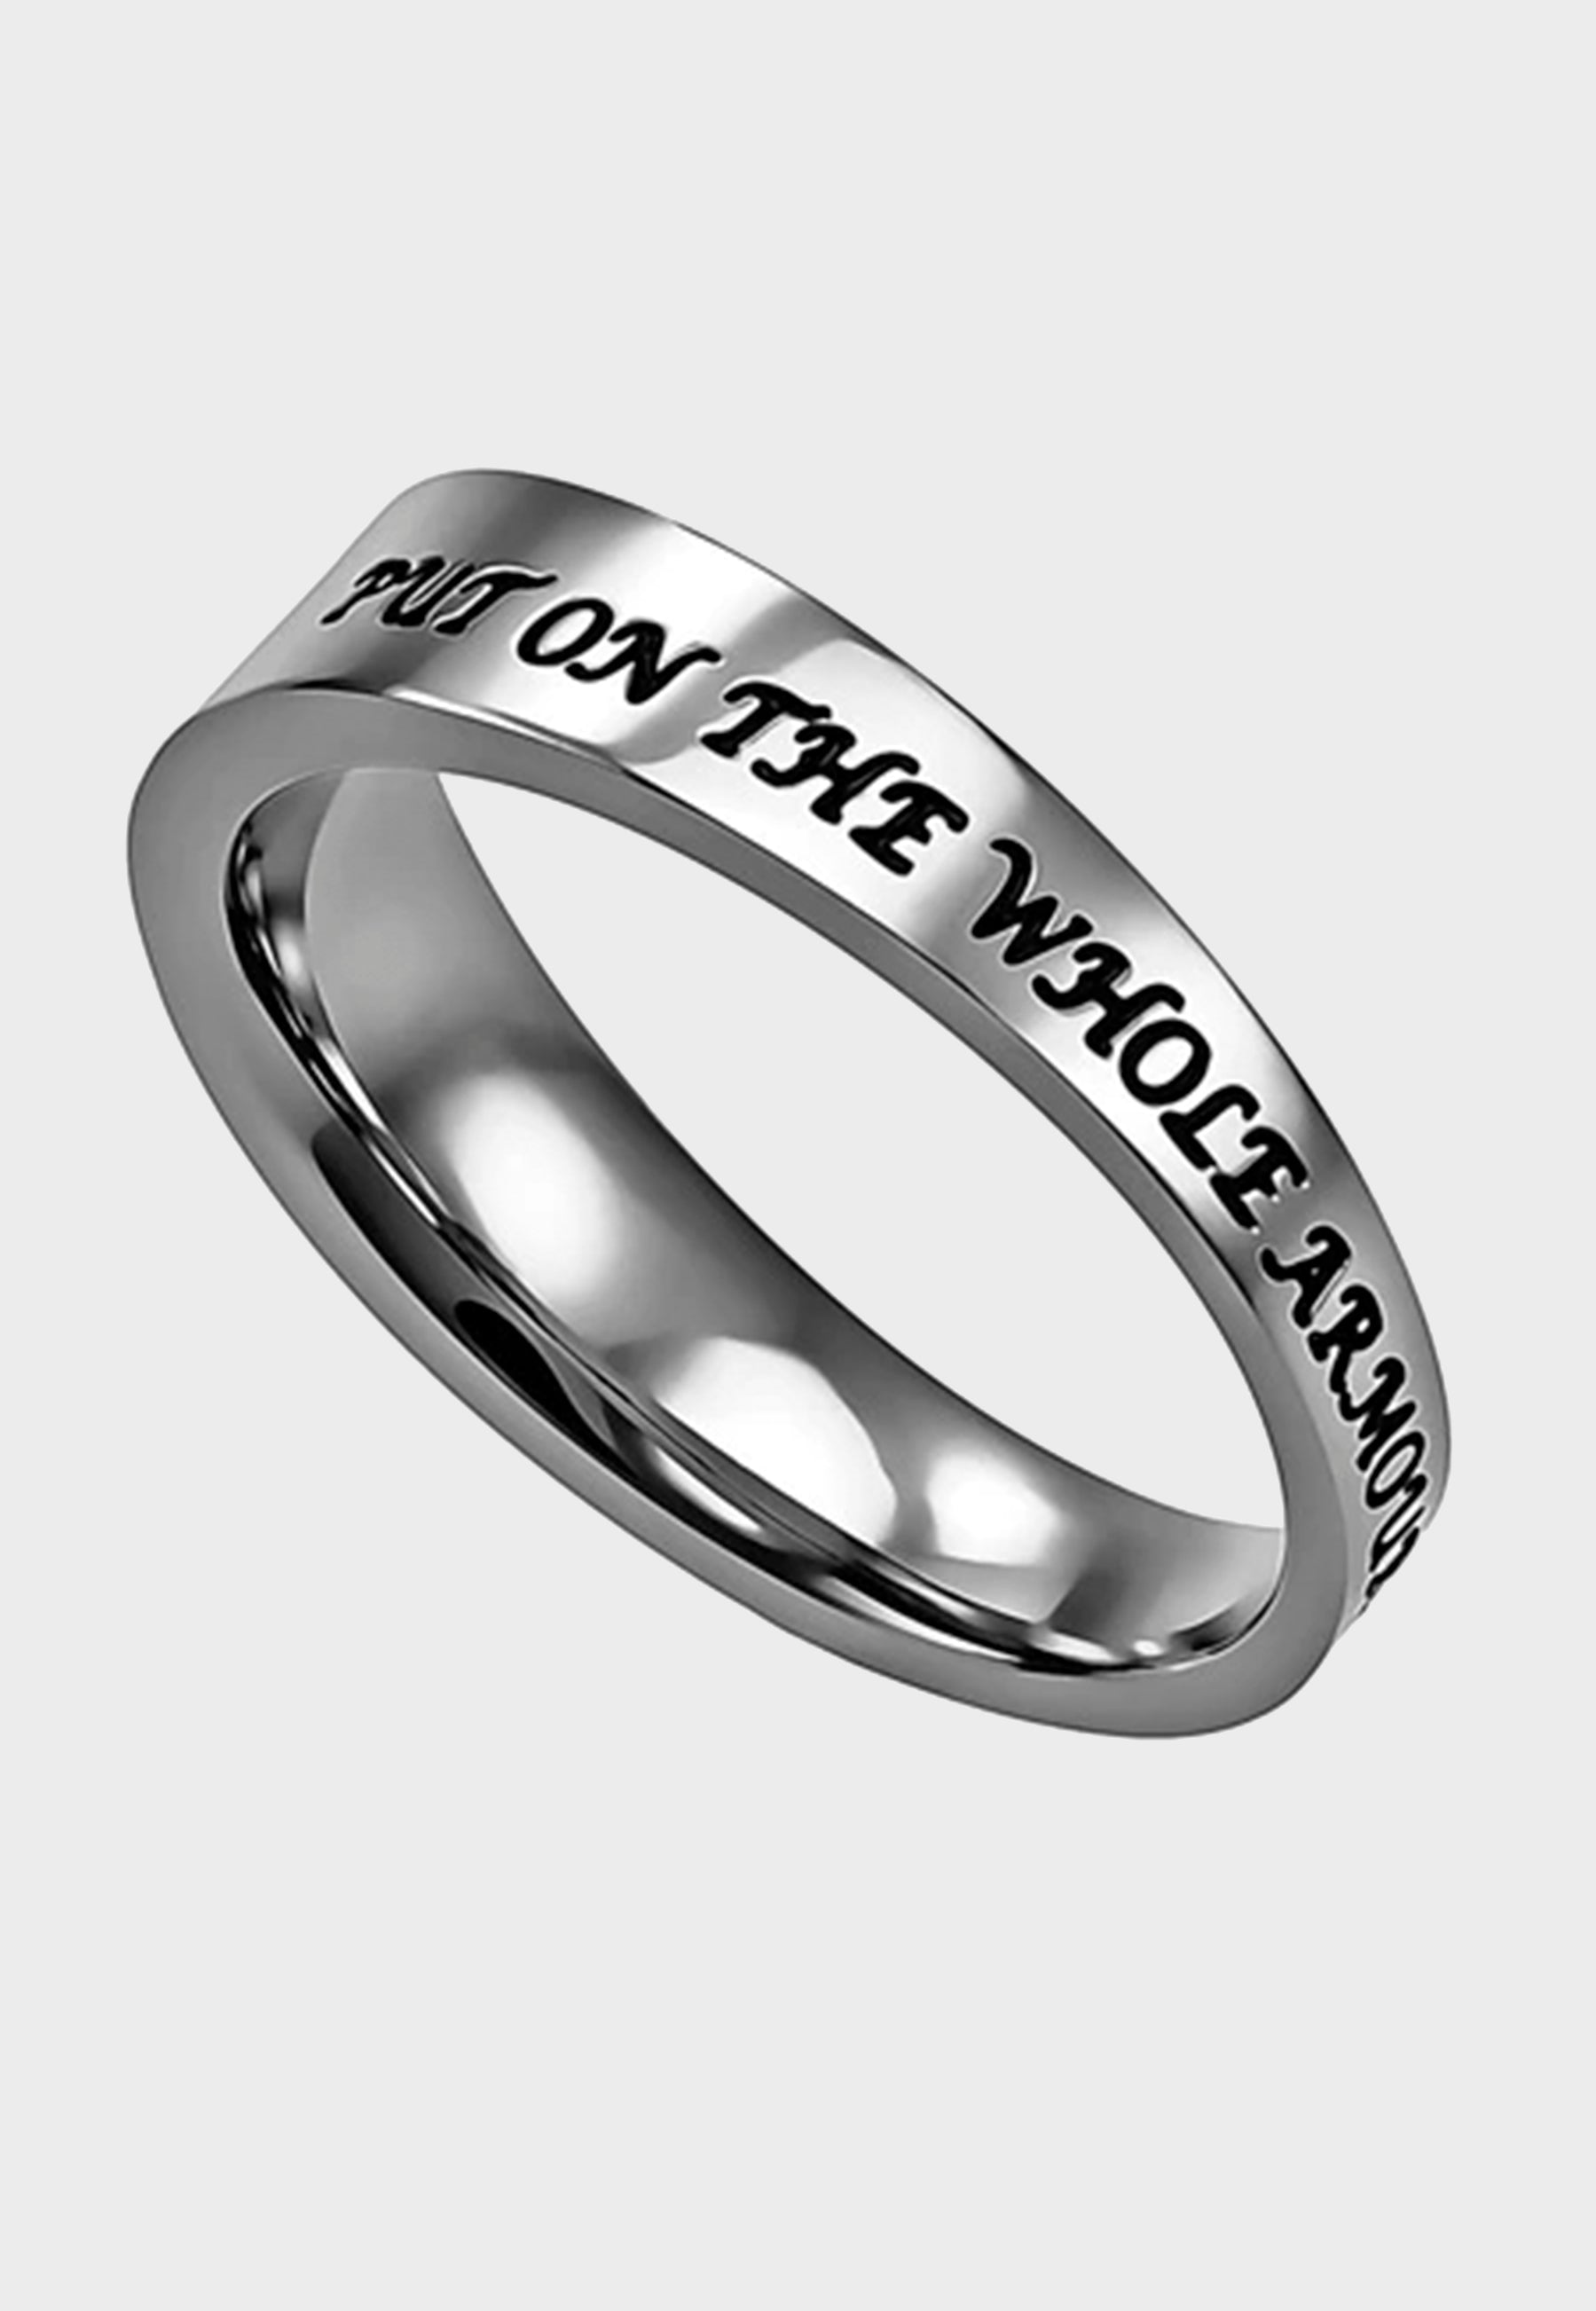 Armor of God women's Christian ring